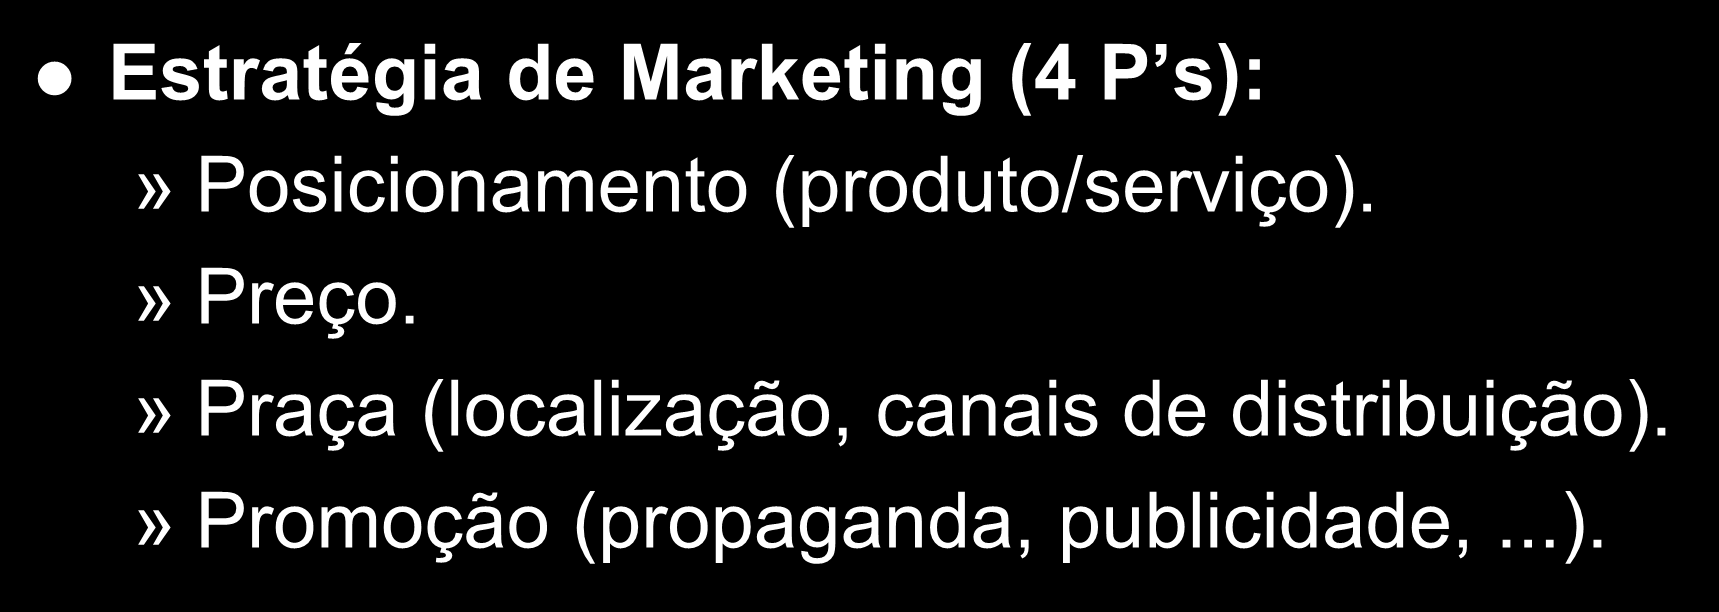 Estratégia de Marketing e Vendas Estratégia de Marketing (4 P s):» Posicionamento